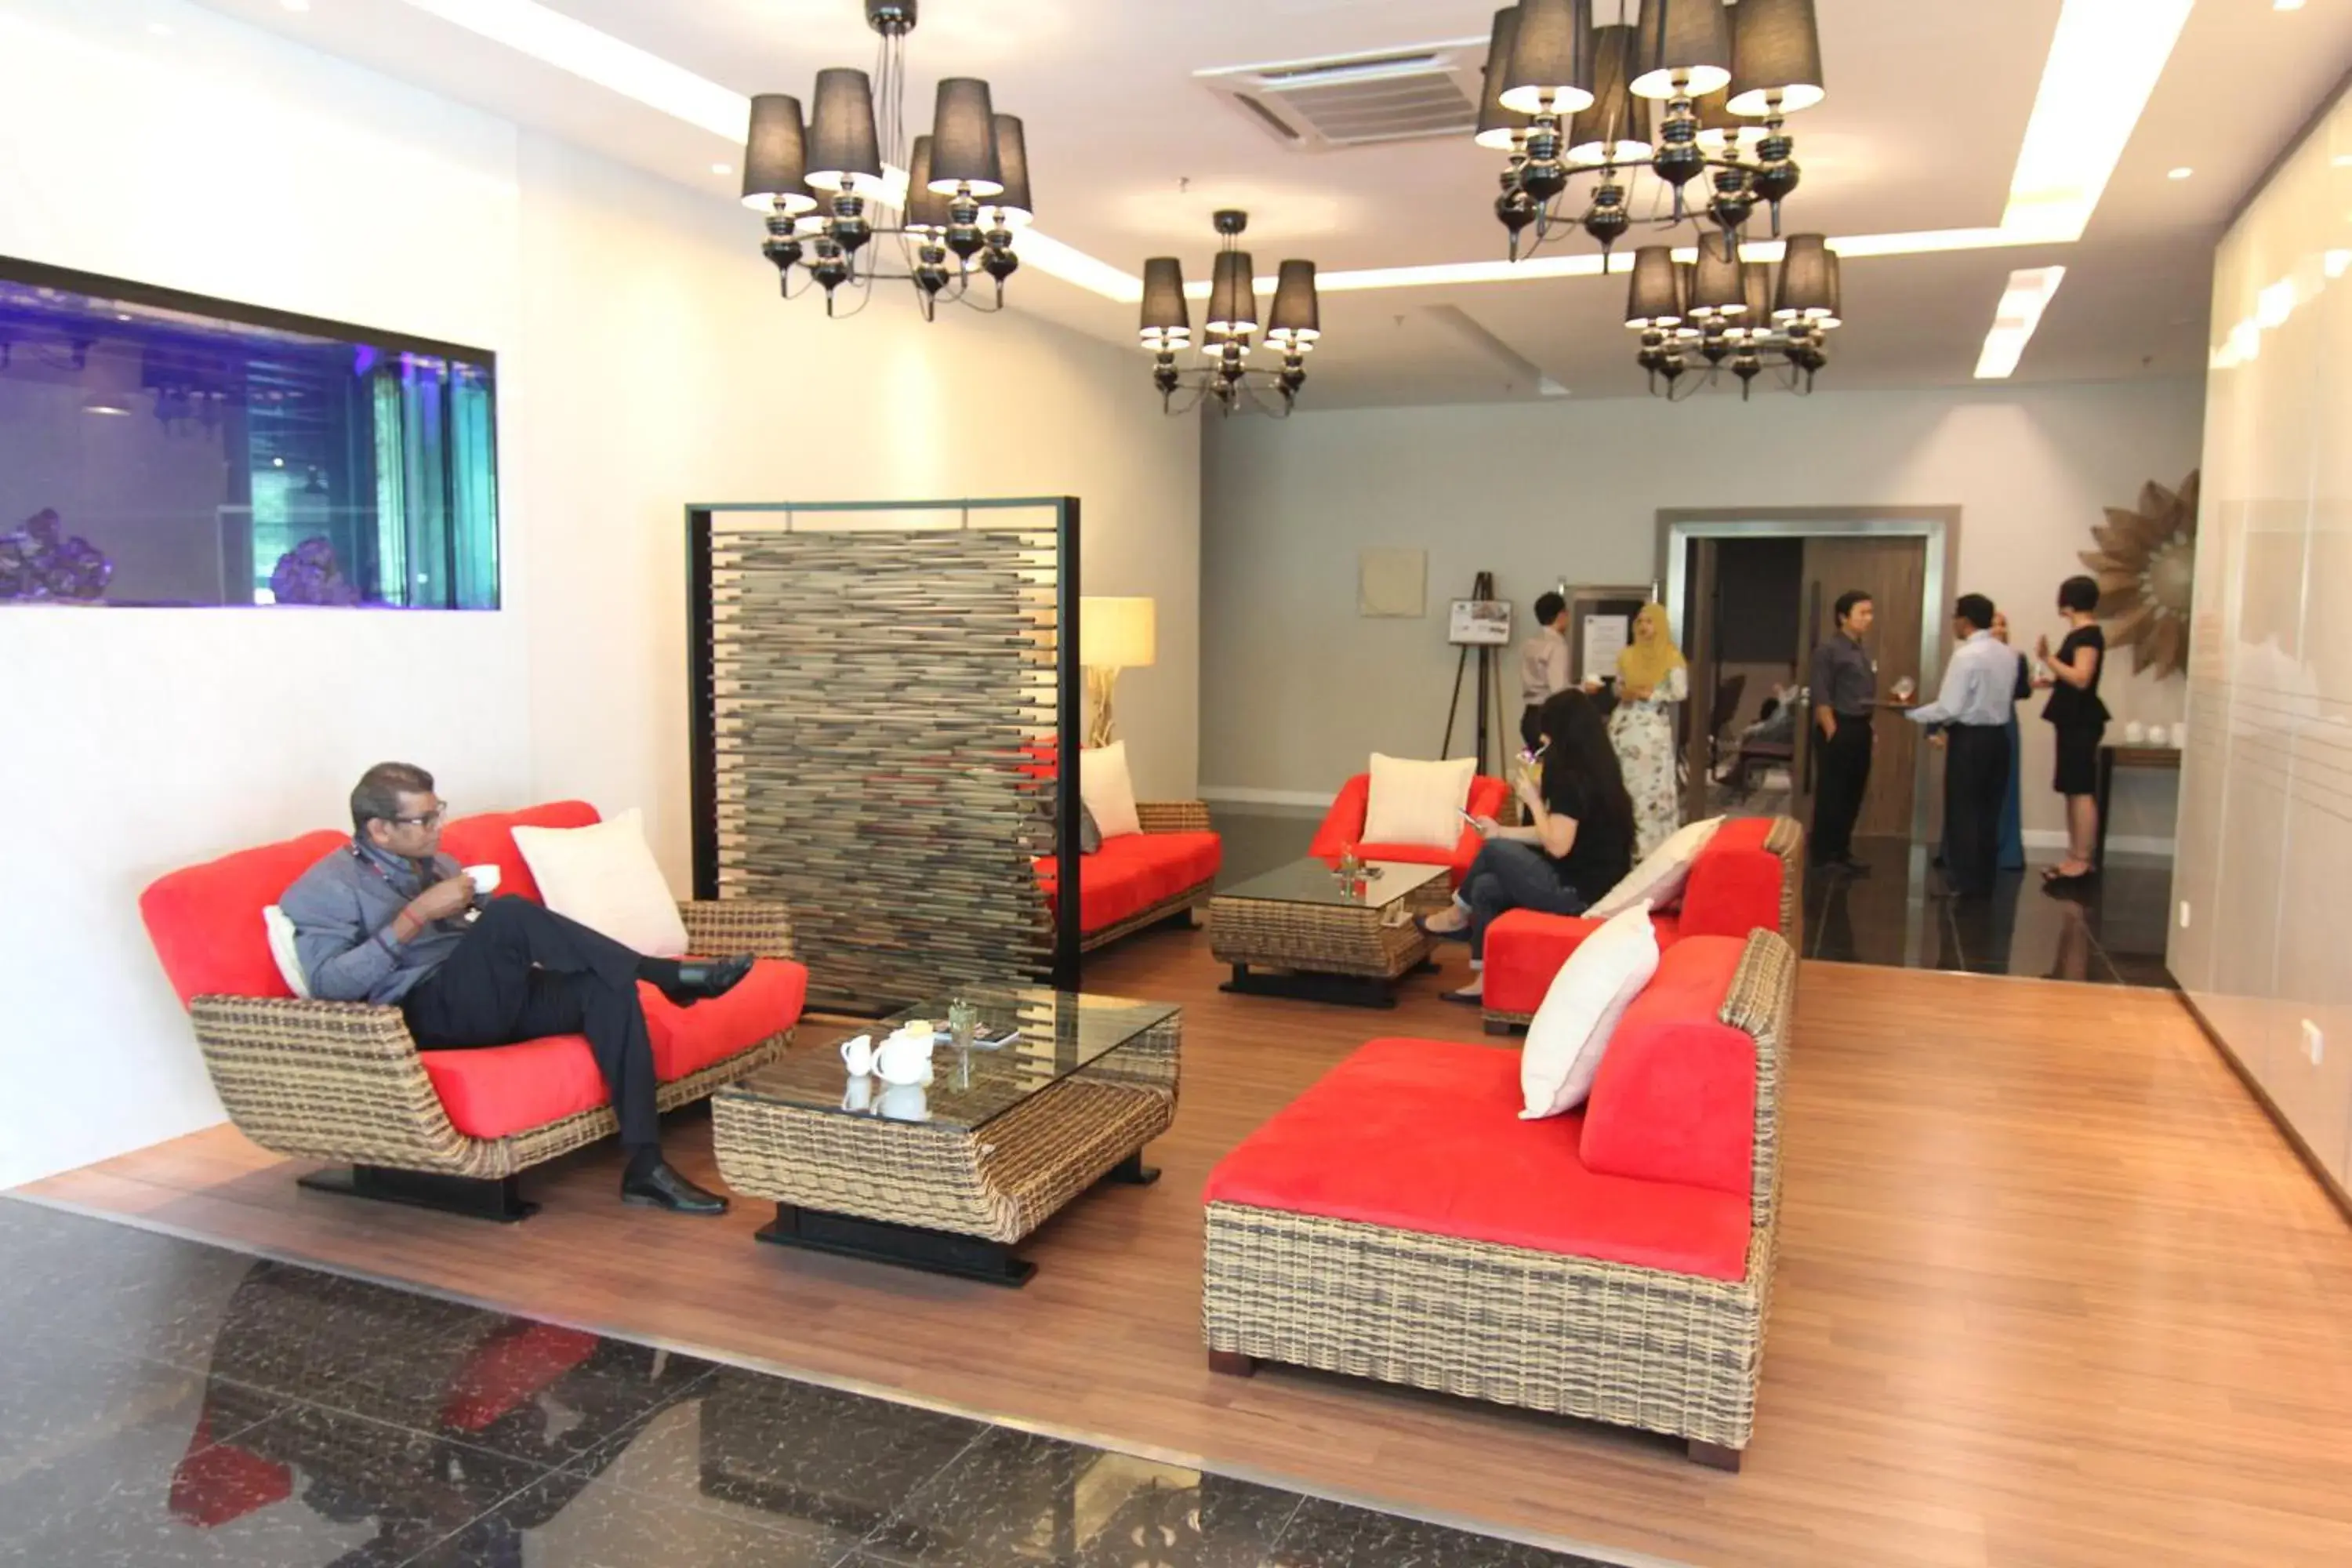 Lobby or reception in Nexus Regency Suites & Hotel